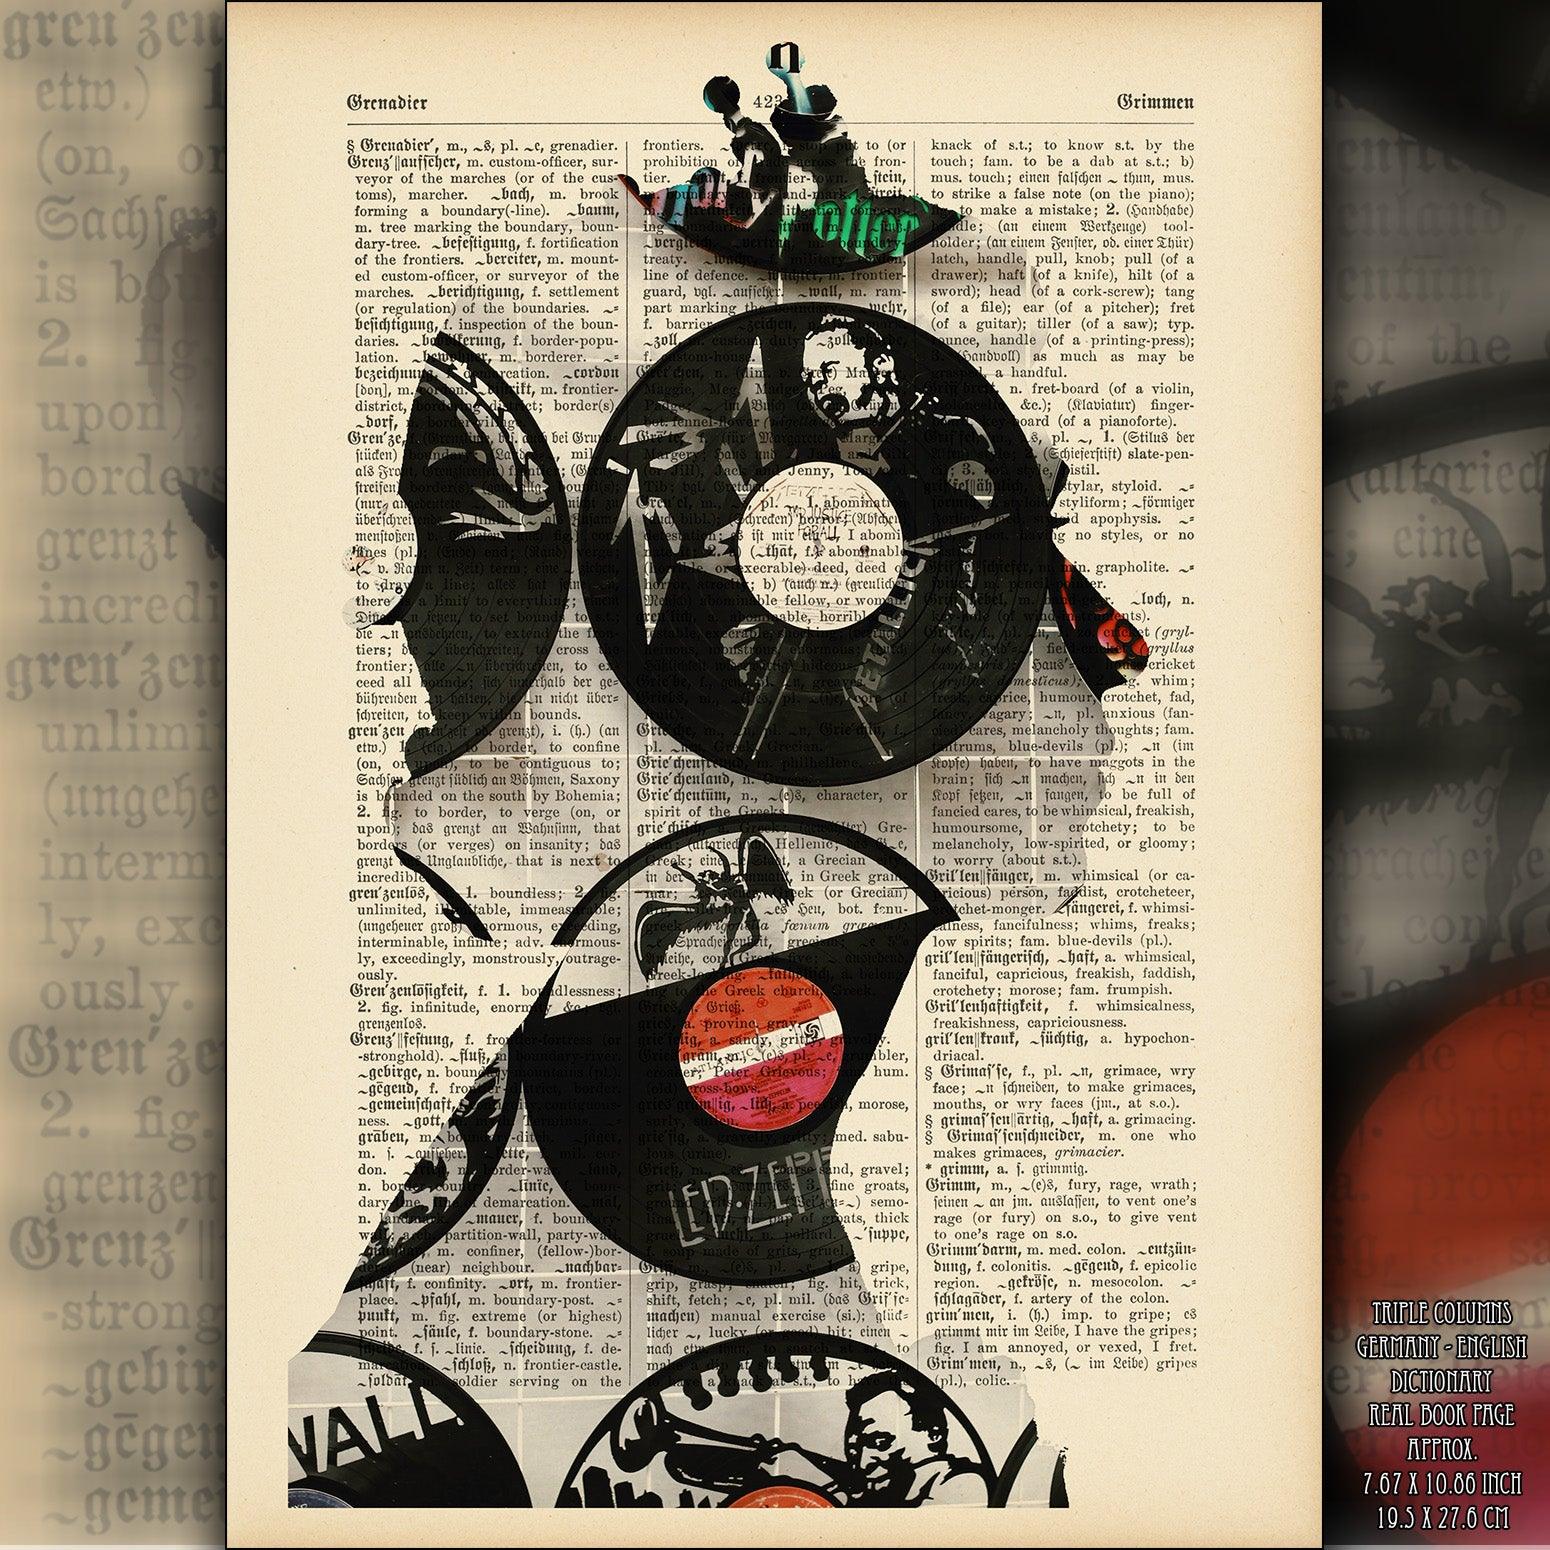 Queen Elizabeth II Vinyl Records Art Poster on Vintage Dictionary Page - ArtCursor